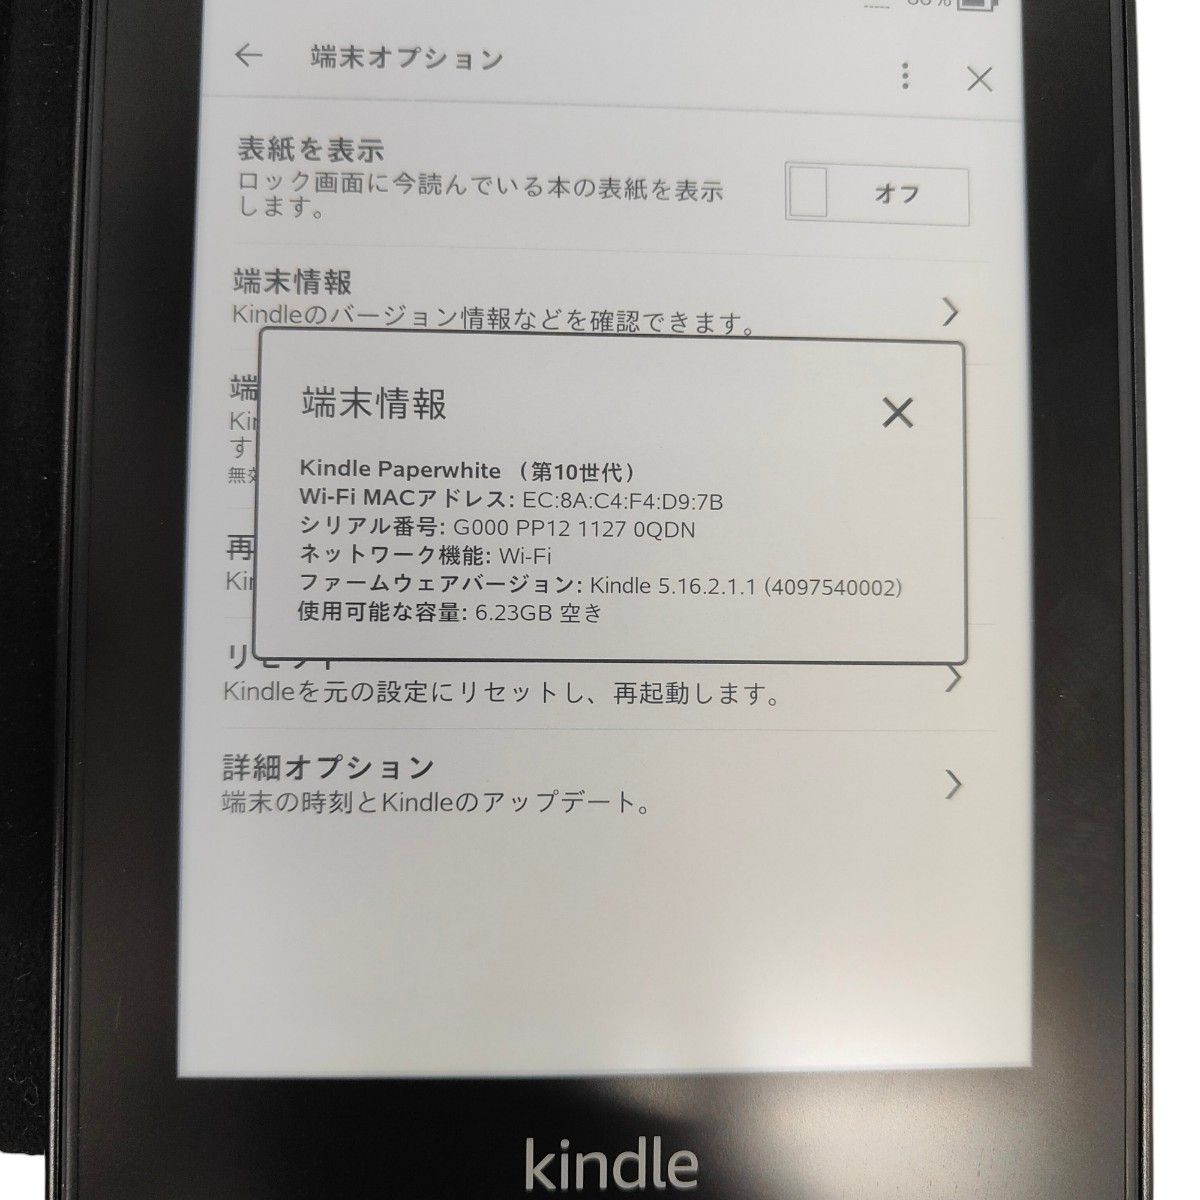 【第10世代】Kindle キンドル　ペーパーホワイト　広告なし　 8GB Paperwhite Amazon 電子書籍リーダー